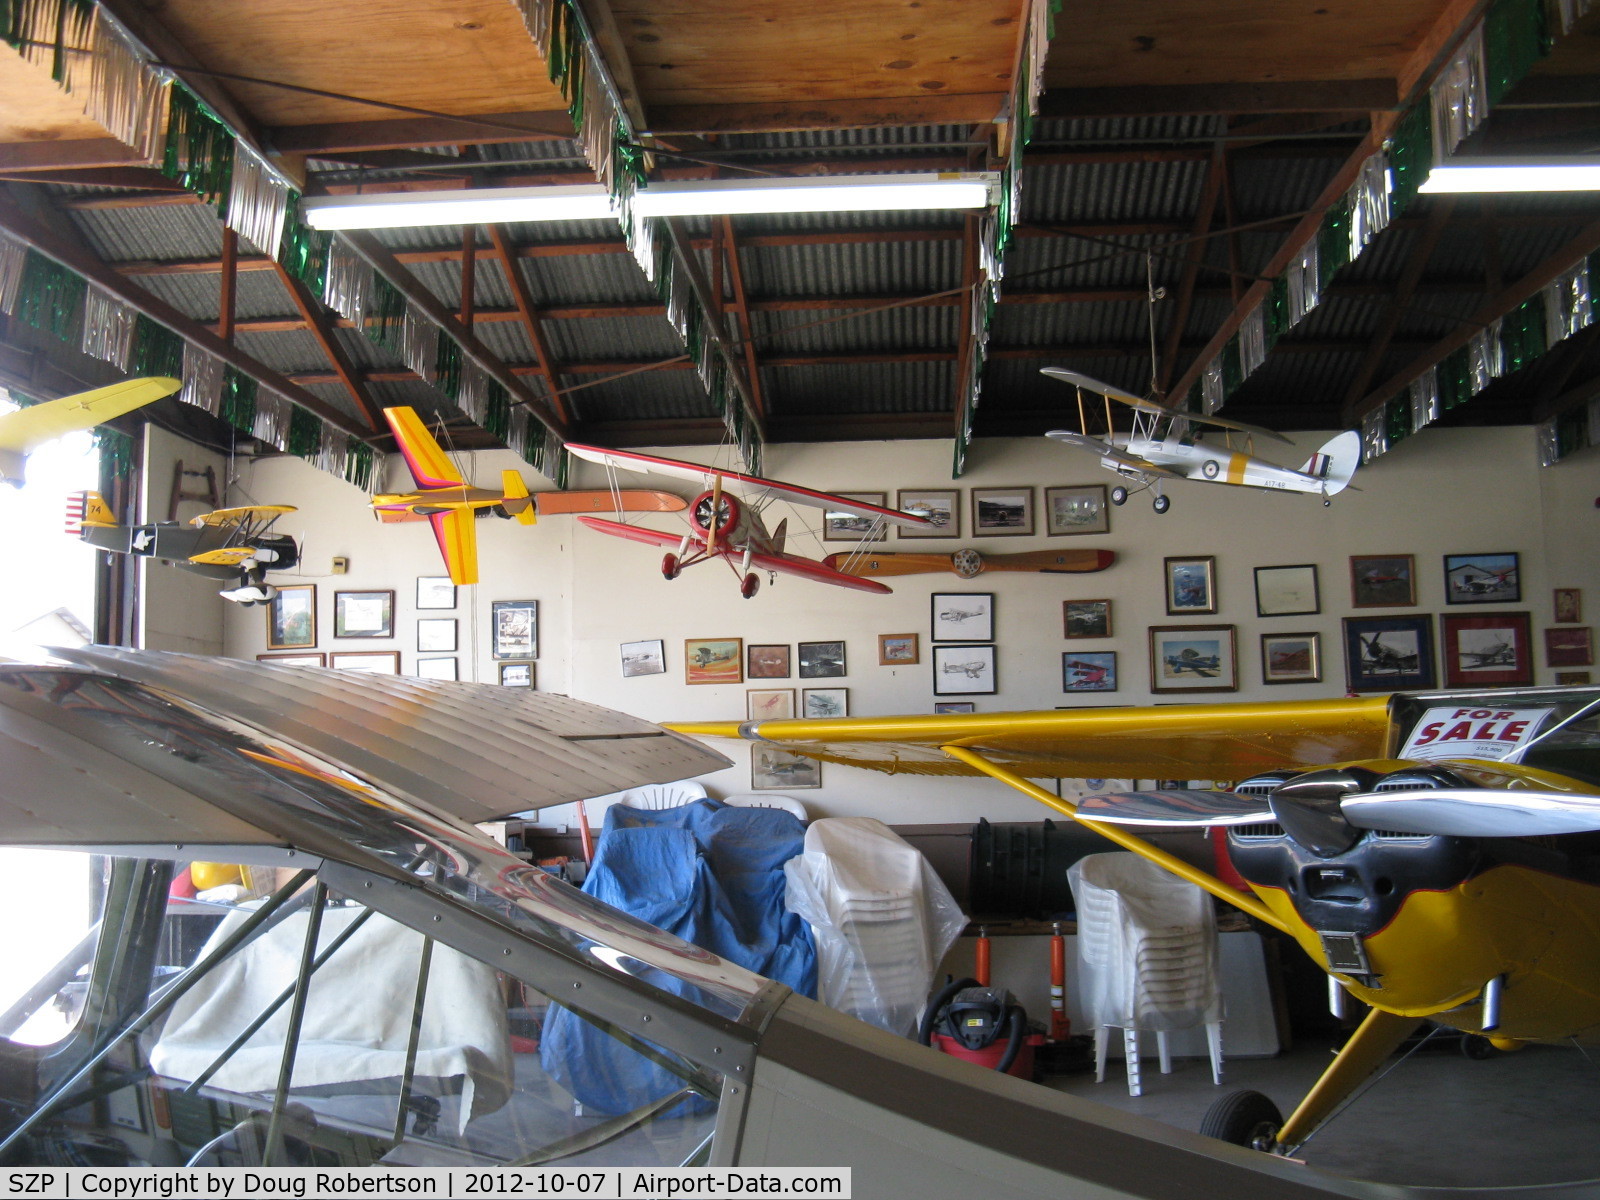 Santa Paula Airport (SZP) - Aviation Museum of Santa Paula. The Quinn Museum Hangar.